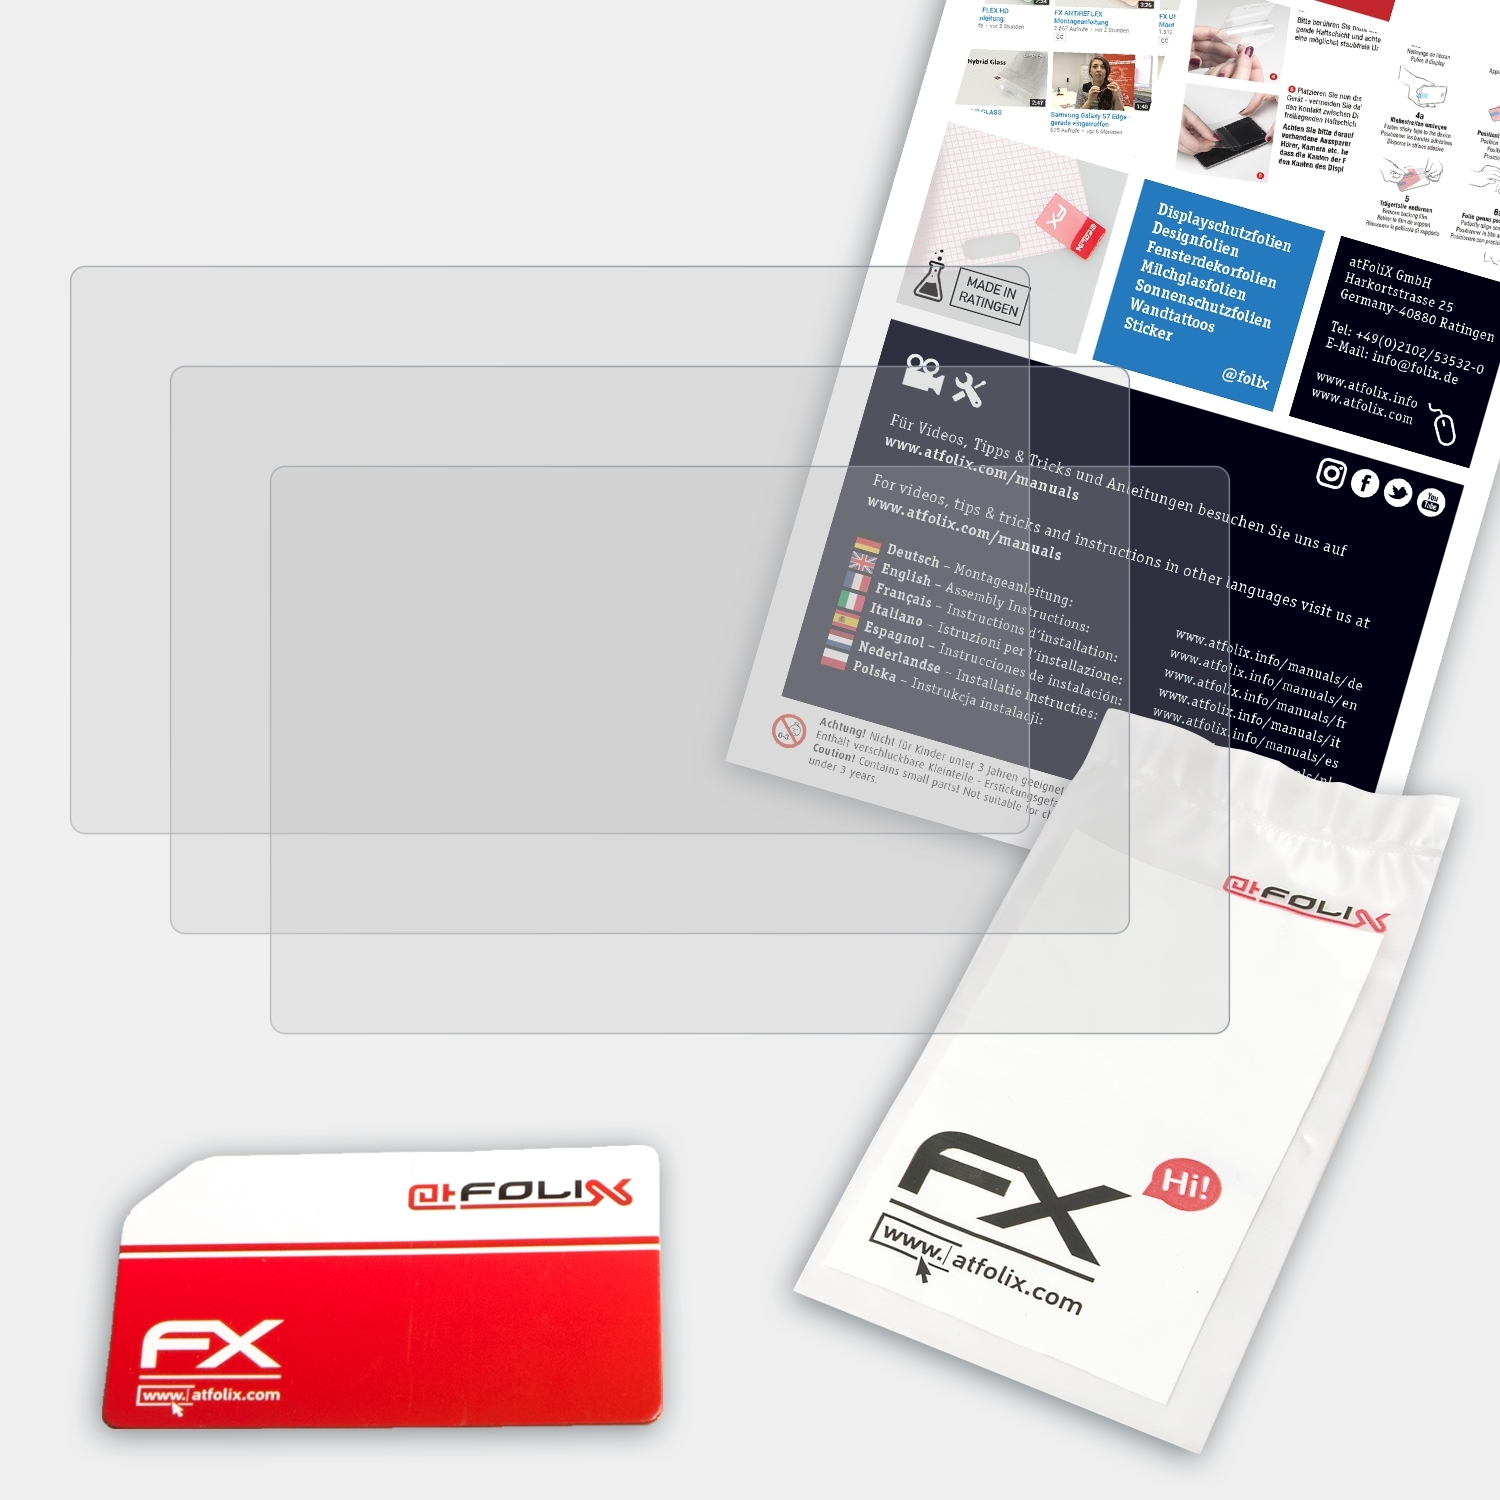 3x ATFOLIX FX-Antireflex Displayschutz(für NEX-F3) Sony